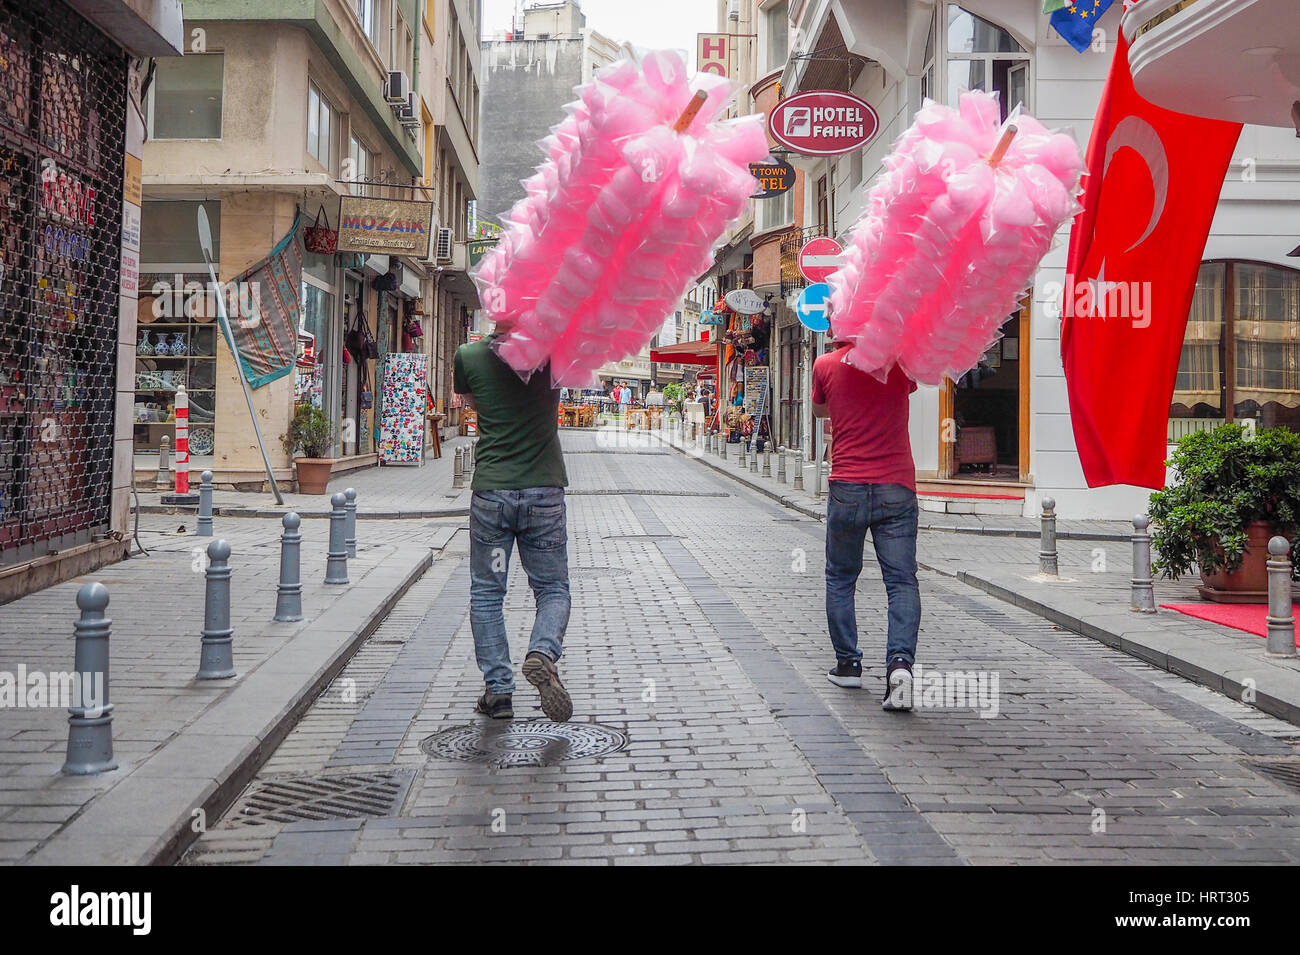 Rosa Candy Floss insaccato e trattenuto sul polo viene fornito da due uomini turco Istanbul TURCHIA Foto Stock